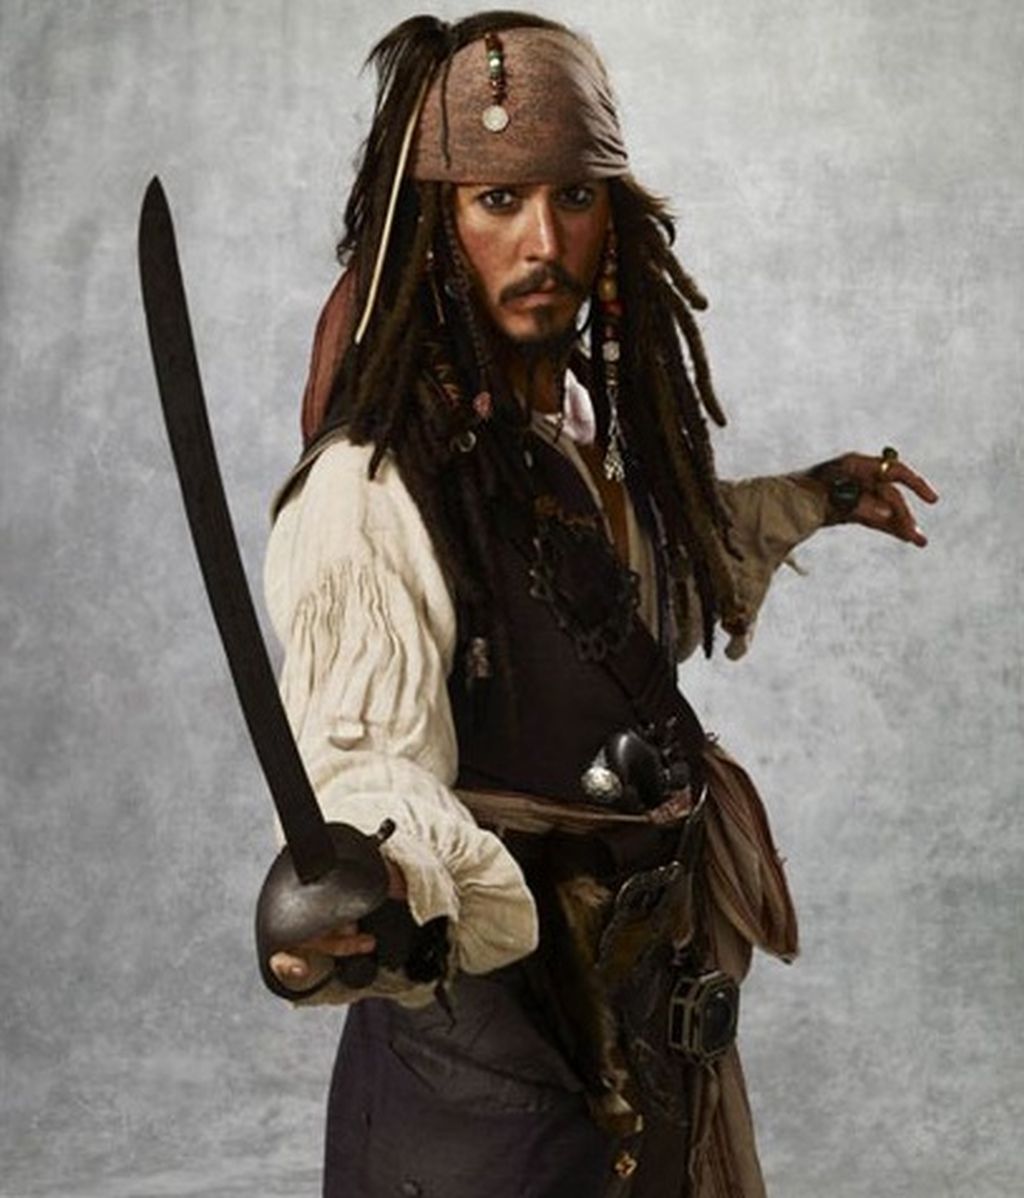 Jack Sparrow y su look desaliñado están presentes en la exposición "Trajes de Hollywood"